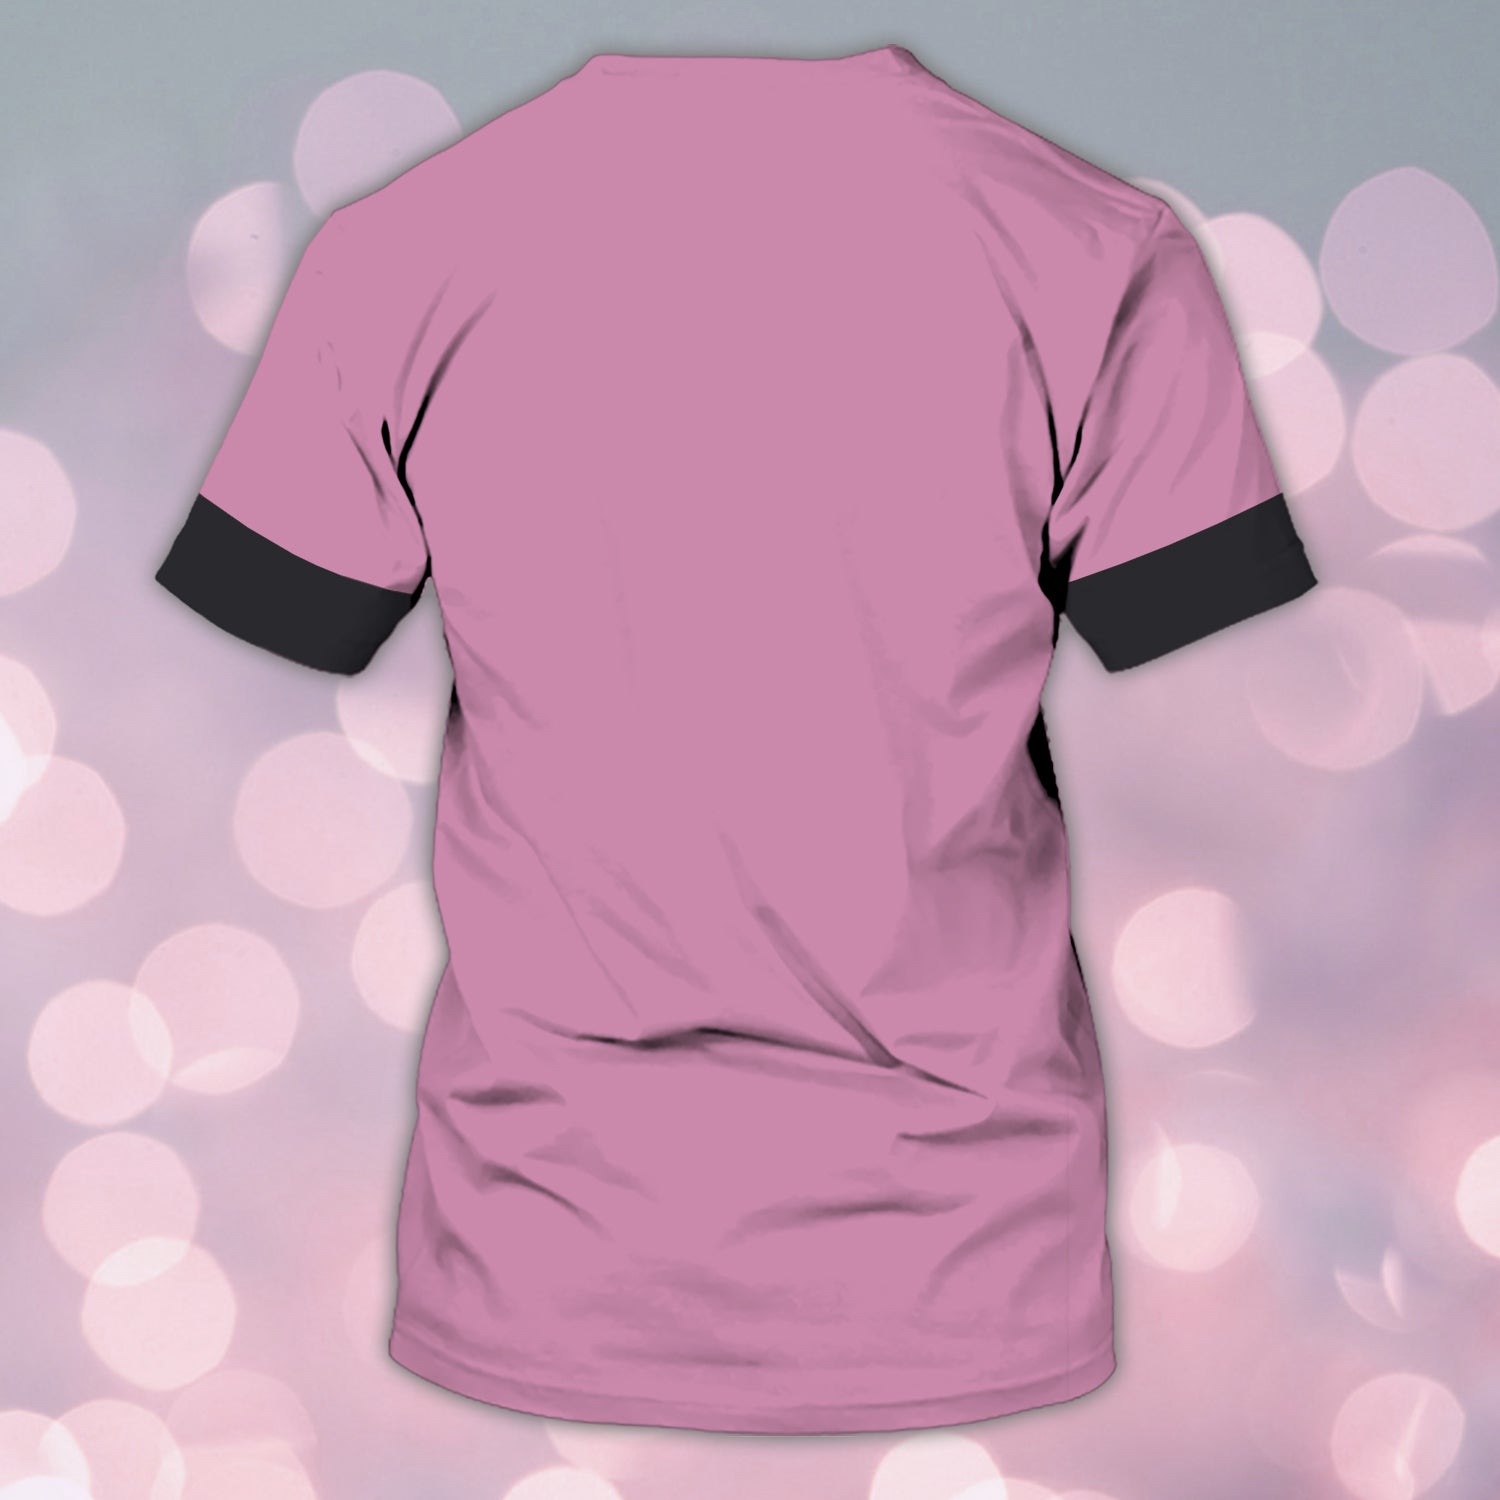 Personalized 3D Tshirt Tad Thanatology Pink Shirts